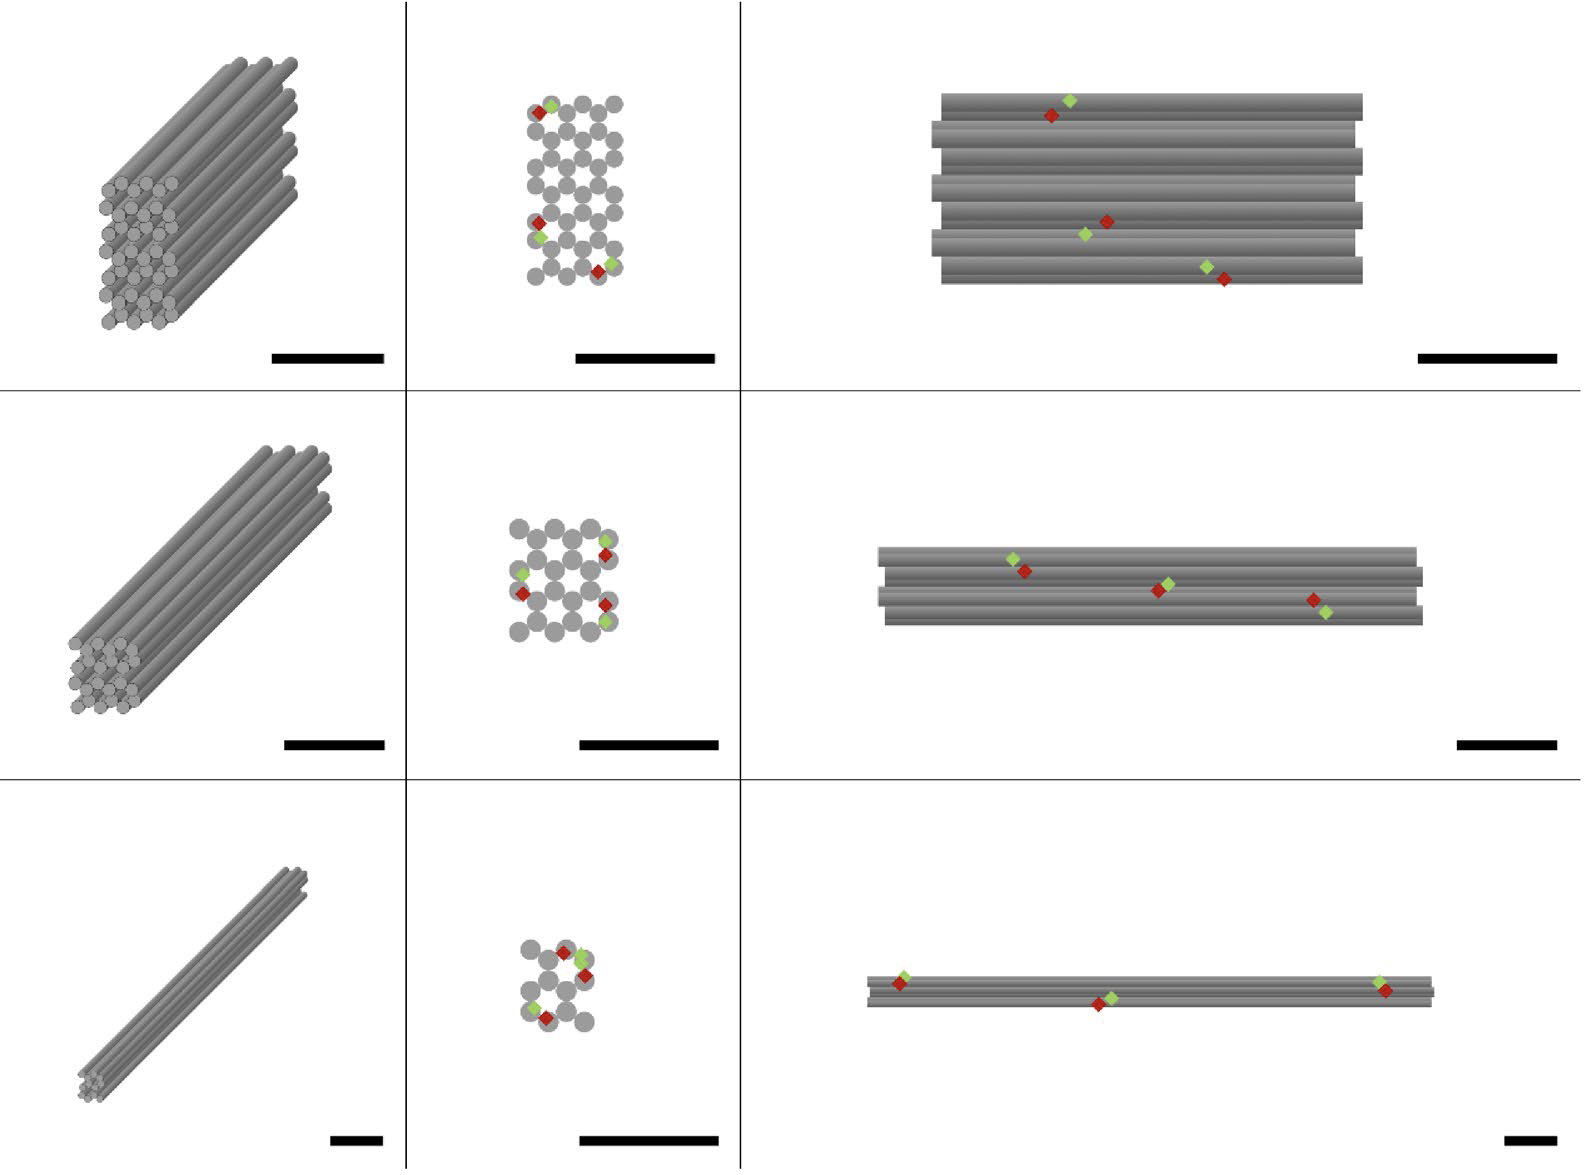 Đặc tính cấu trúc của cấu trúc nano DNA origami và đánh giá chất lượng lắp ráp của chúng